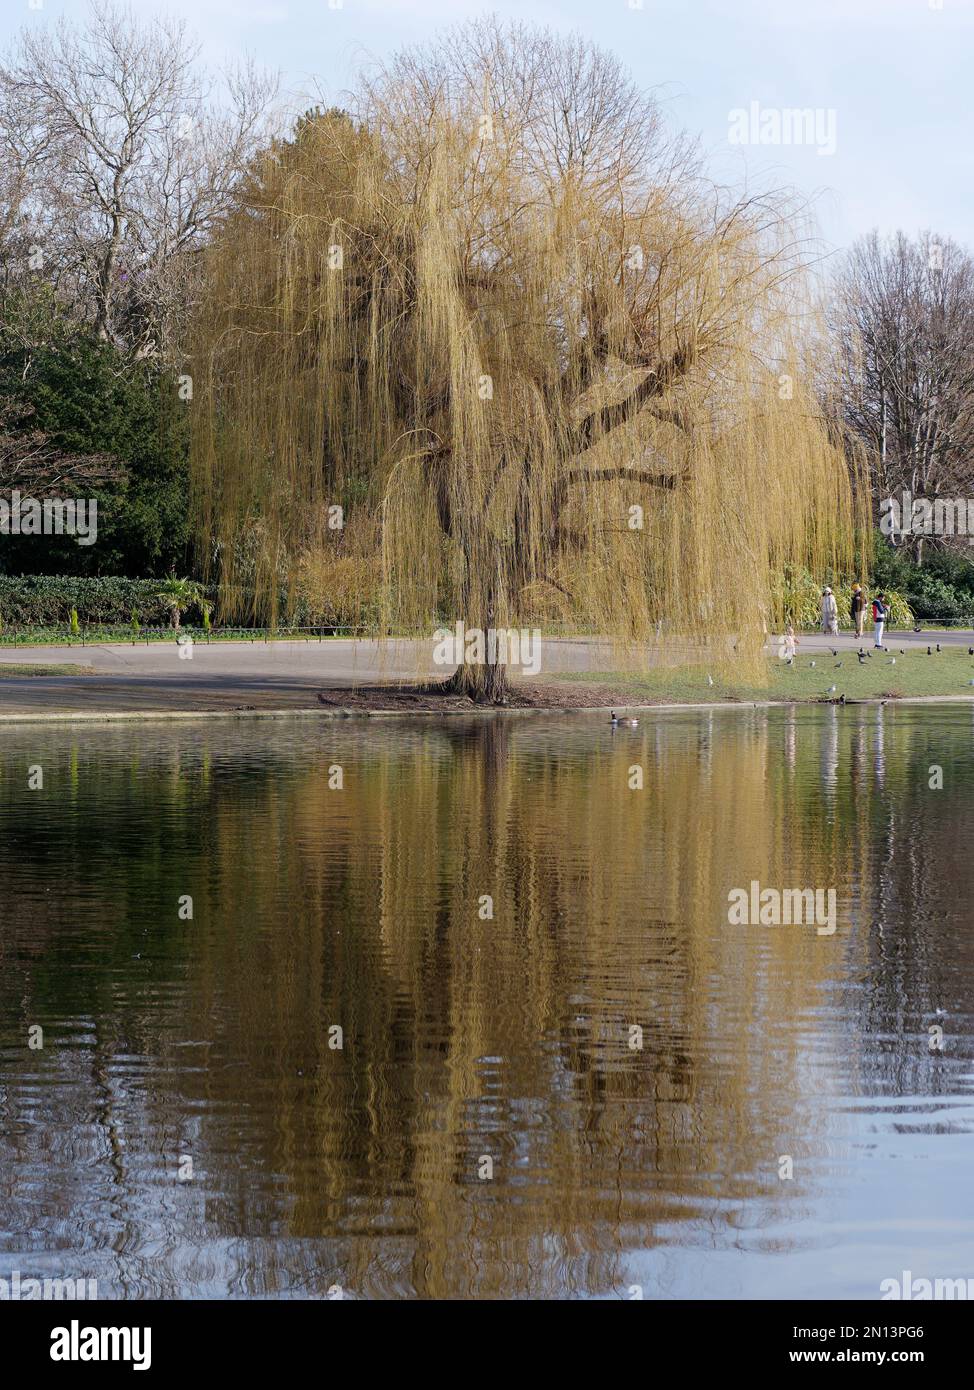 Saule se reflète dans un étang en hiver dans Regents Park. Londres, Angleterre Banque D'Images